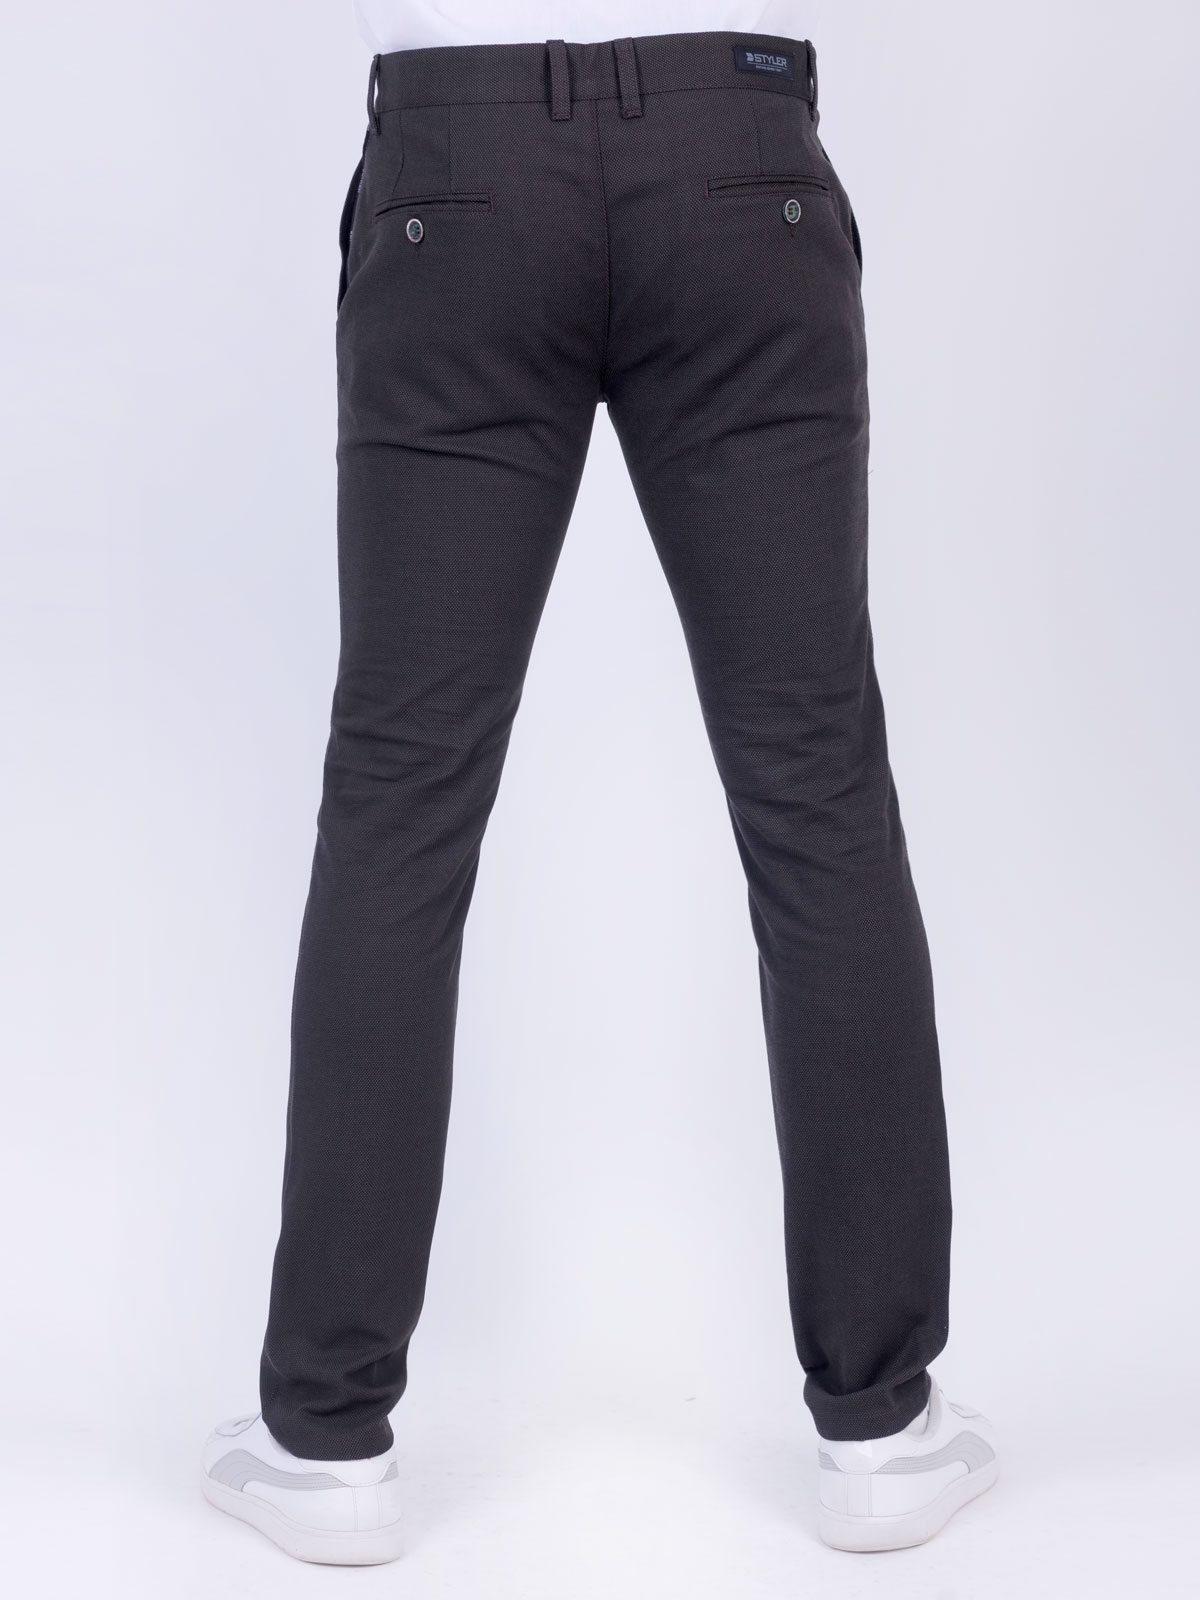 Παντελόνι σε σκούρο χακί χρώμα - 60303 € 66.37 img2